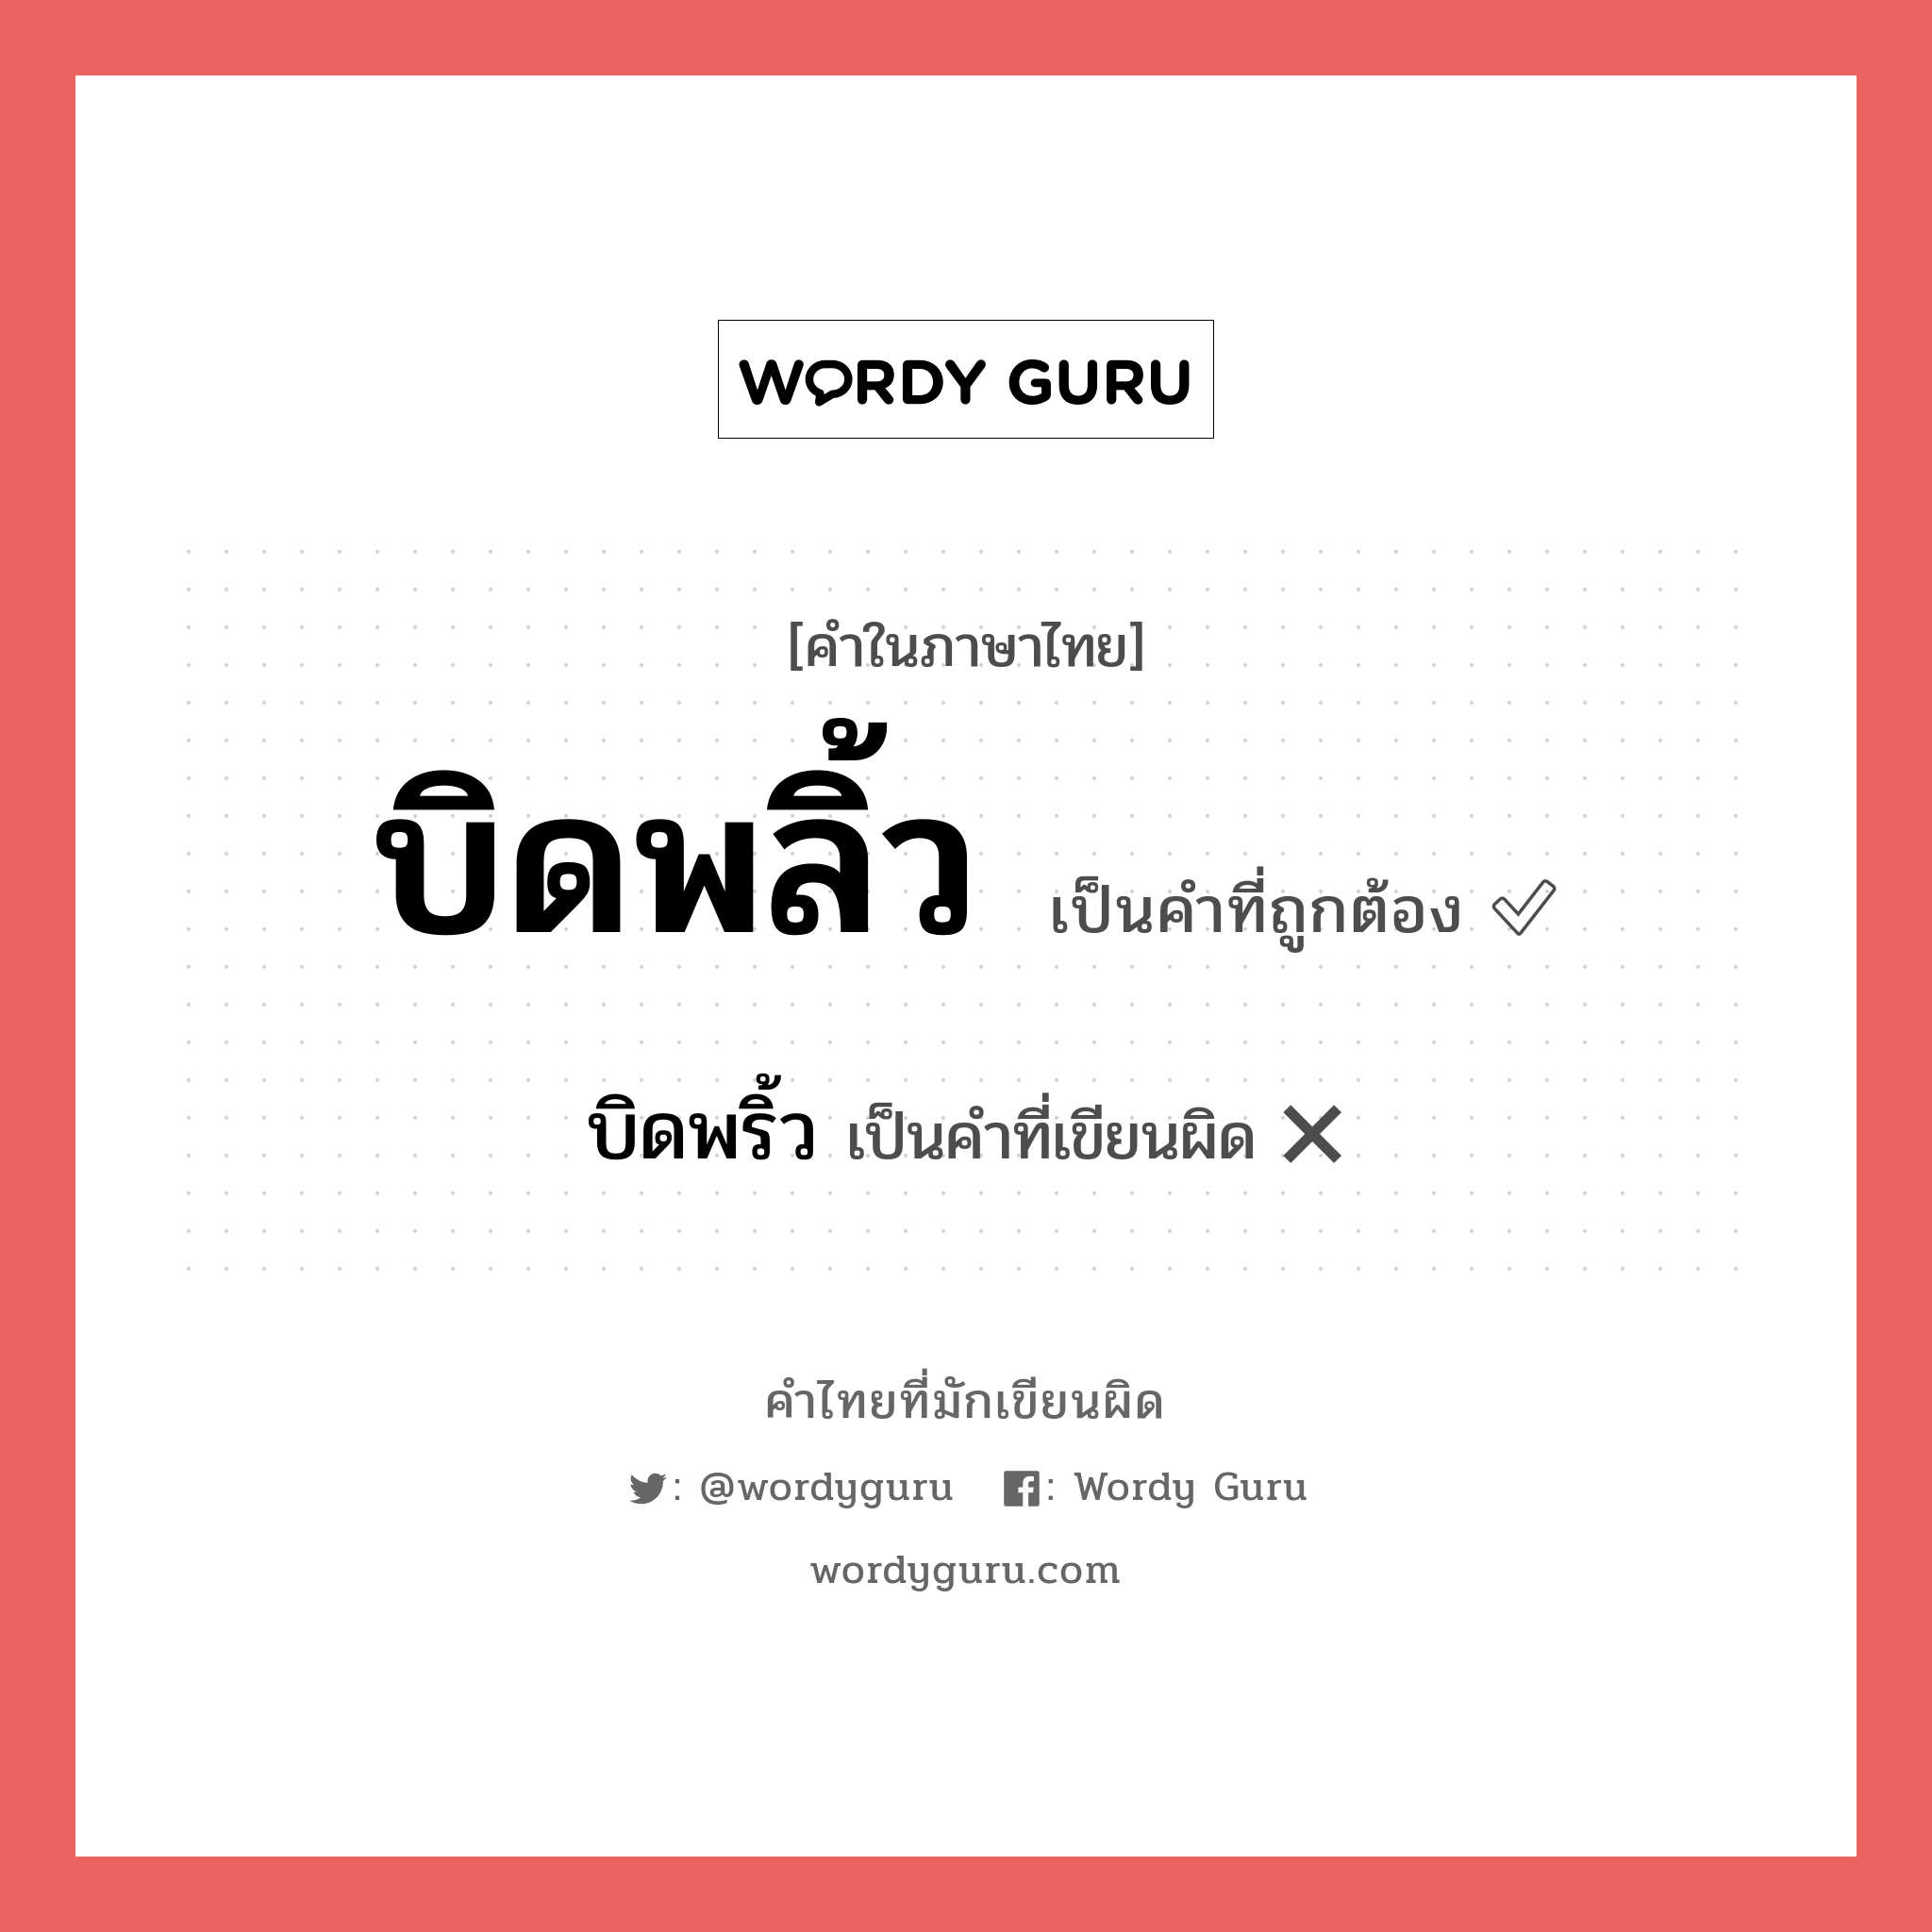 บิดพลิ้ว หรือ บิดพริ้ว คำไหนเขียนถูก?, คำในภาษาไทยที่มักเขียนผิด บิดพลิ้ว คำที่ผิด ❌ บิดพริ้ว